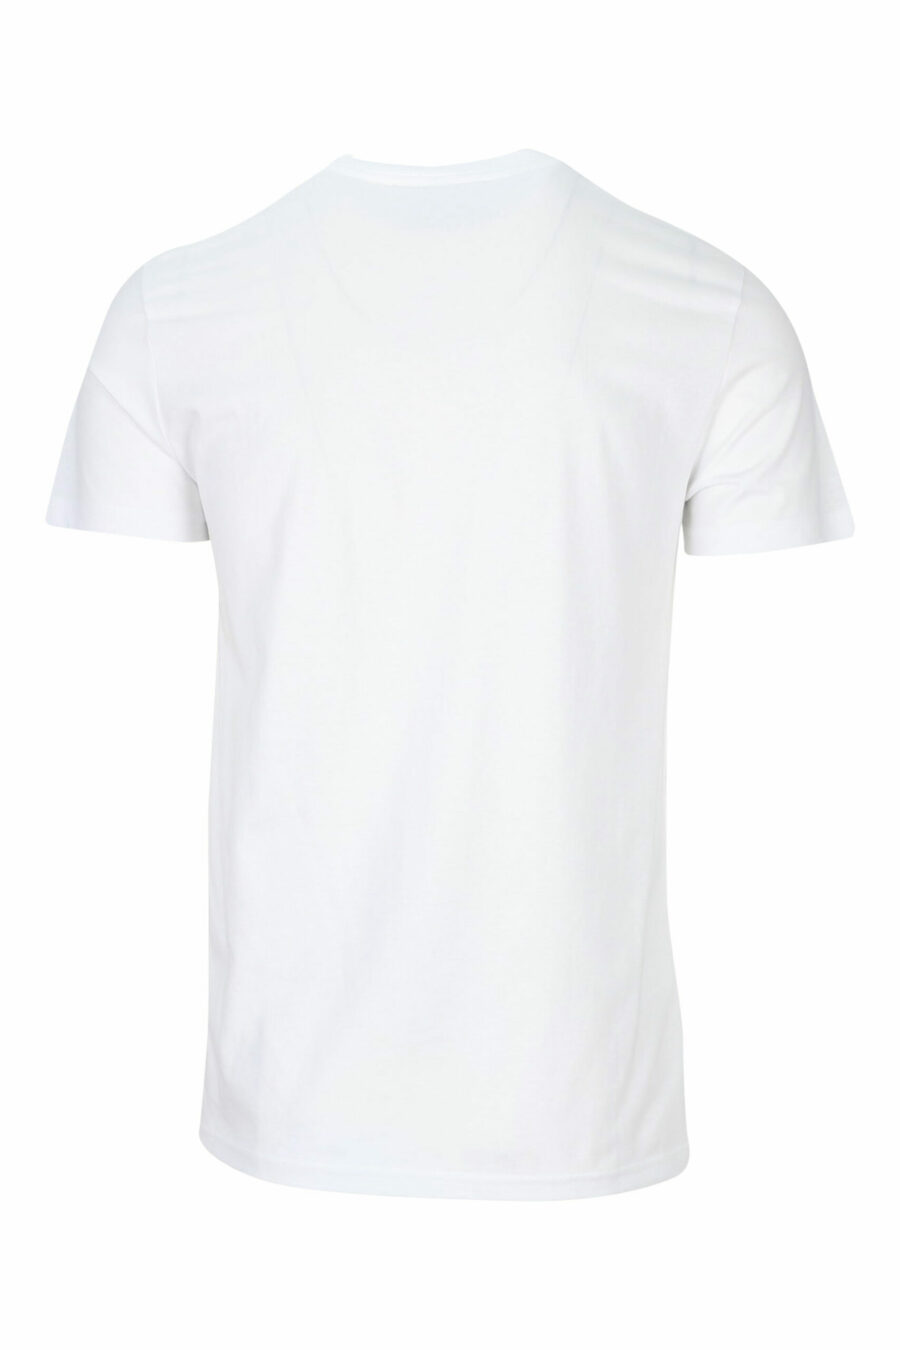 T-shirt branca com maxilogue clássico dourado brilhante - 8052019456738 1 scaled